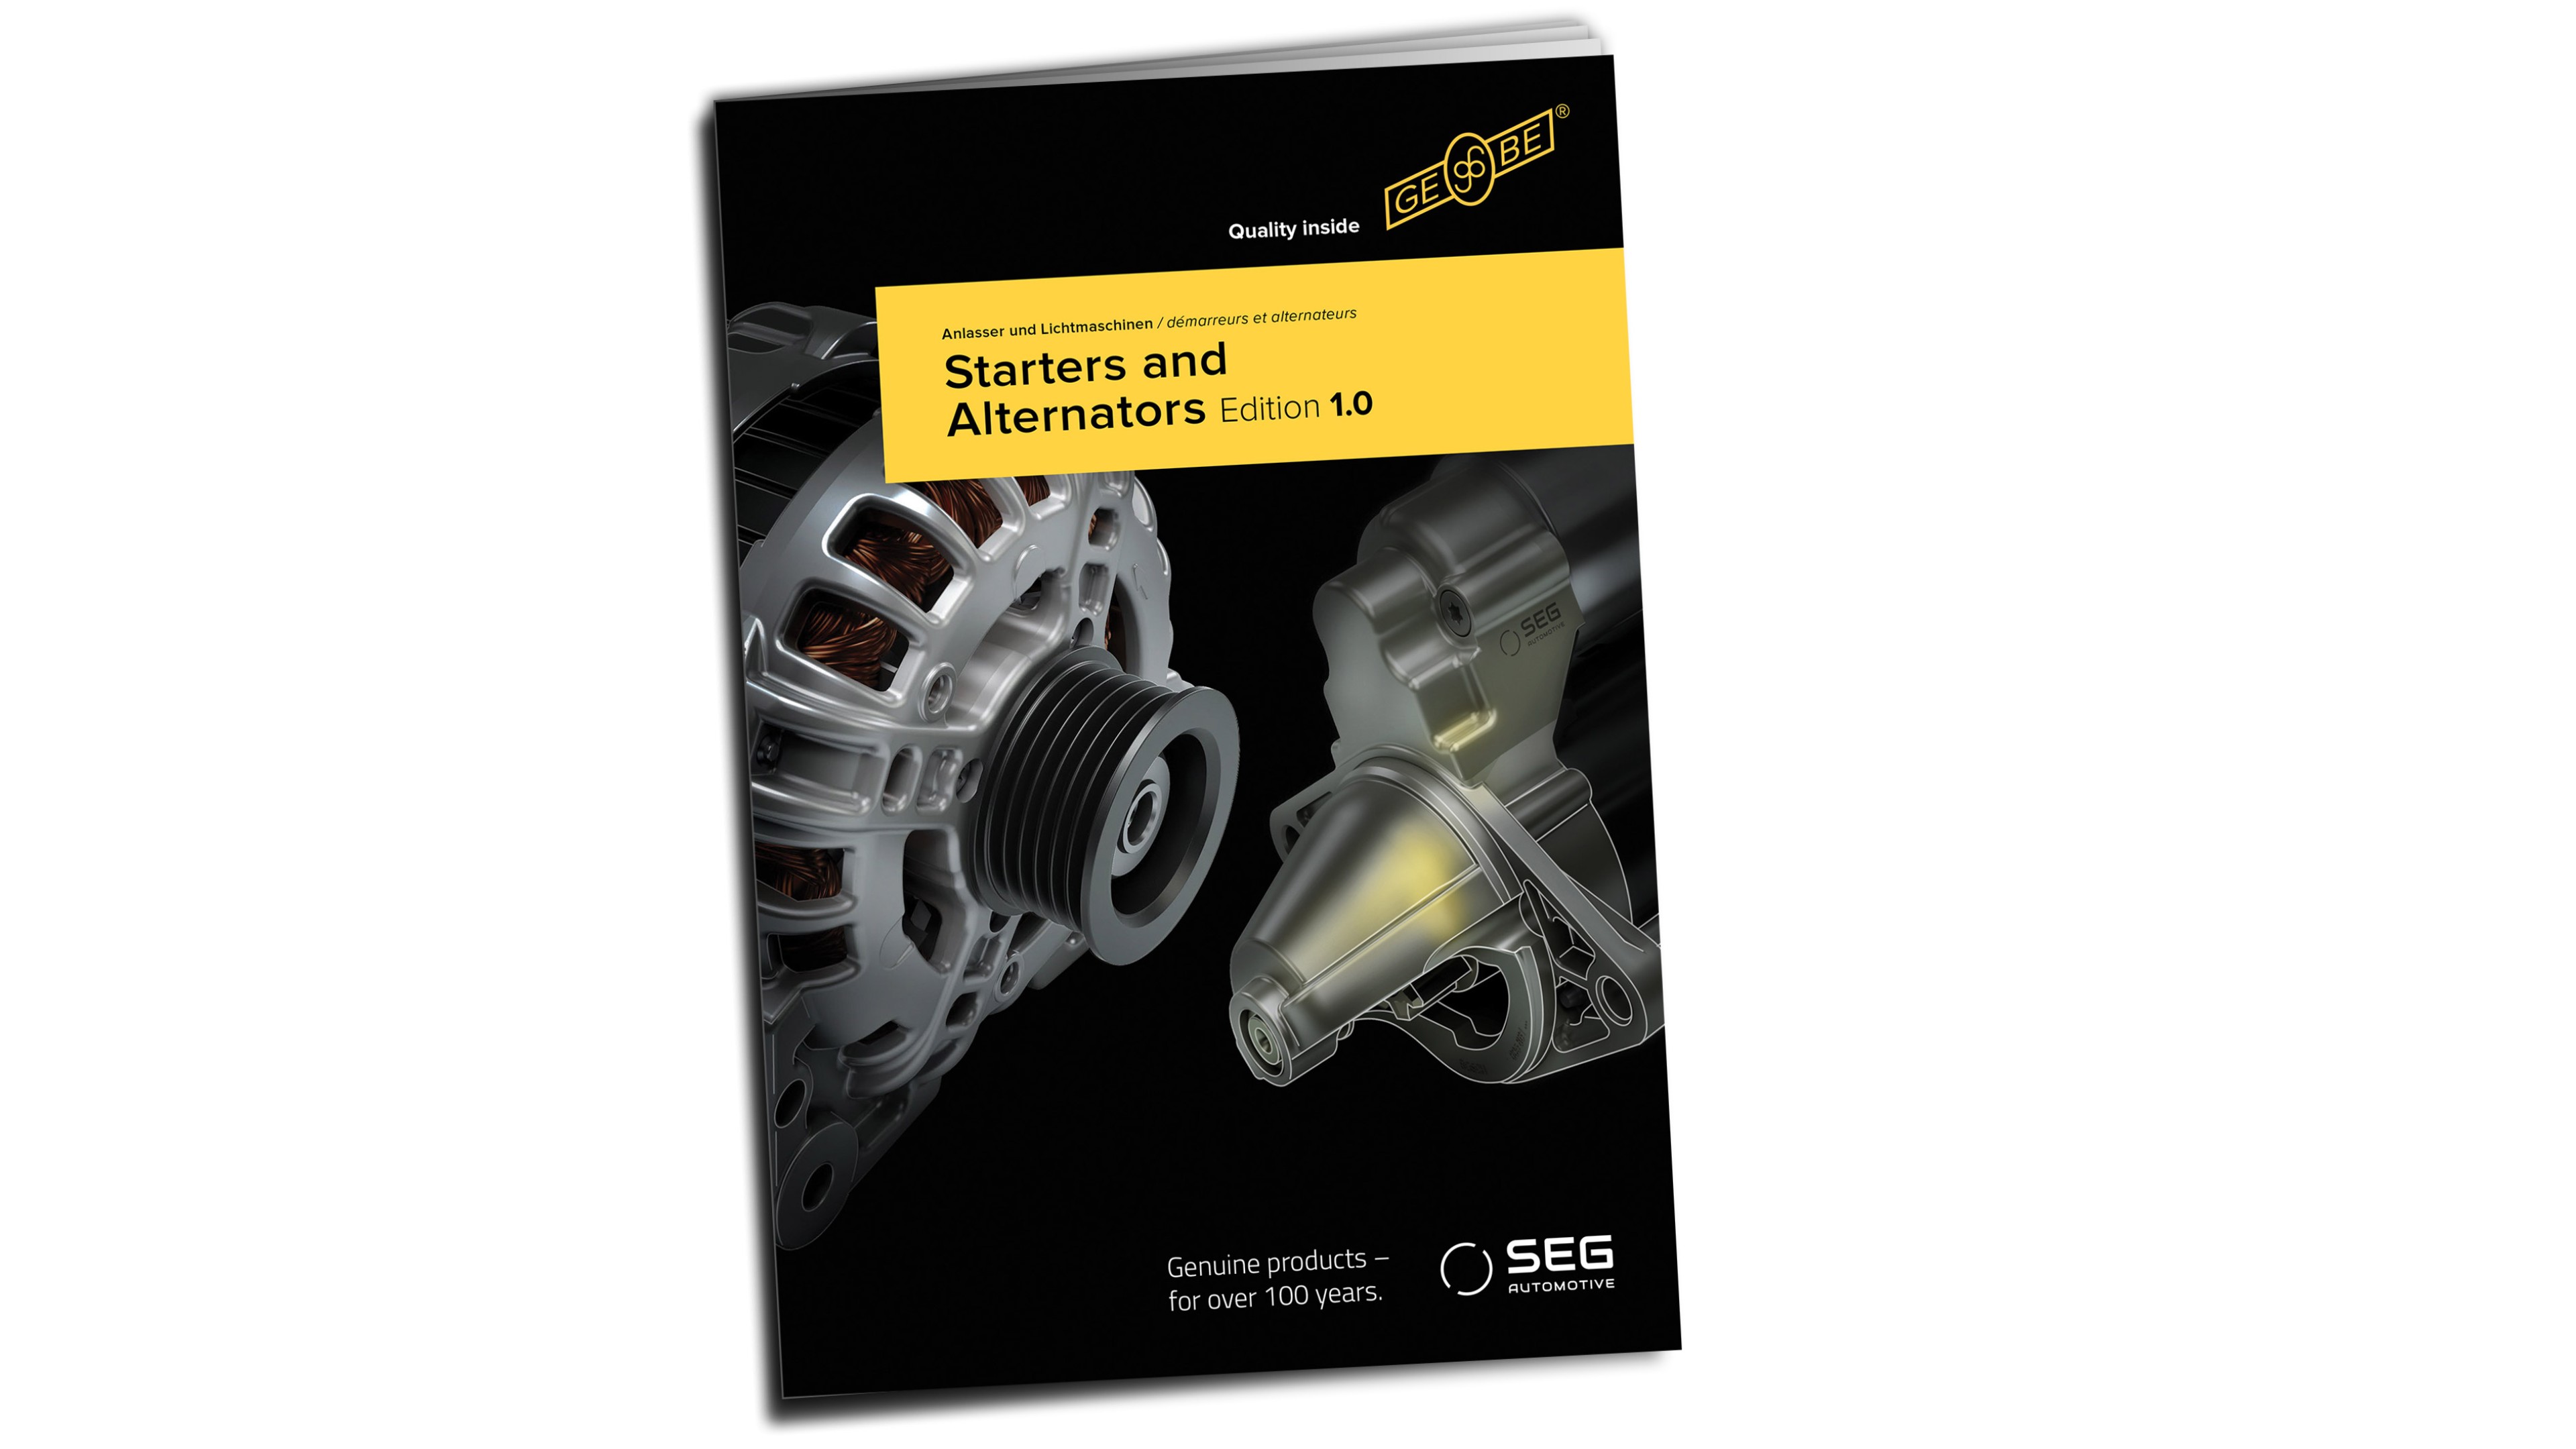 IKA Aftermarket Katalog präsentiert SEG Automotive Produkte